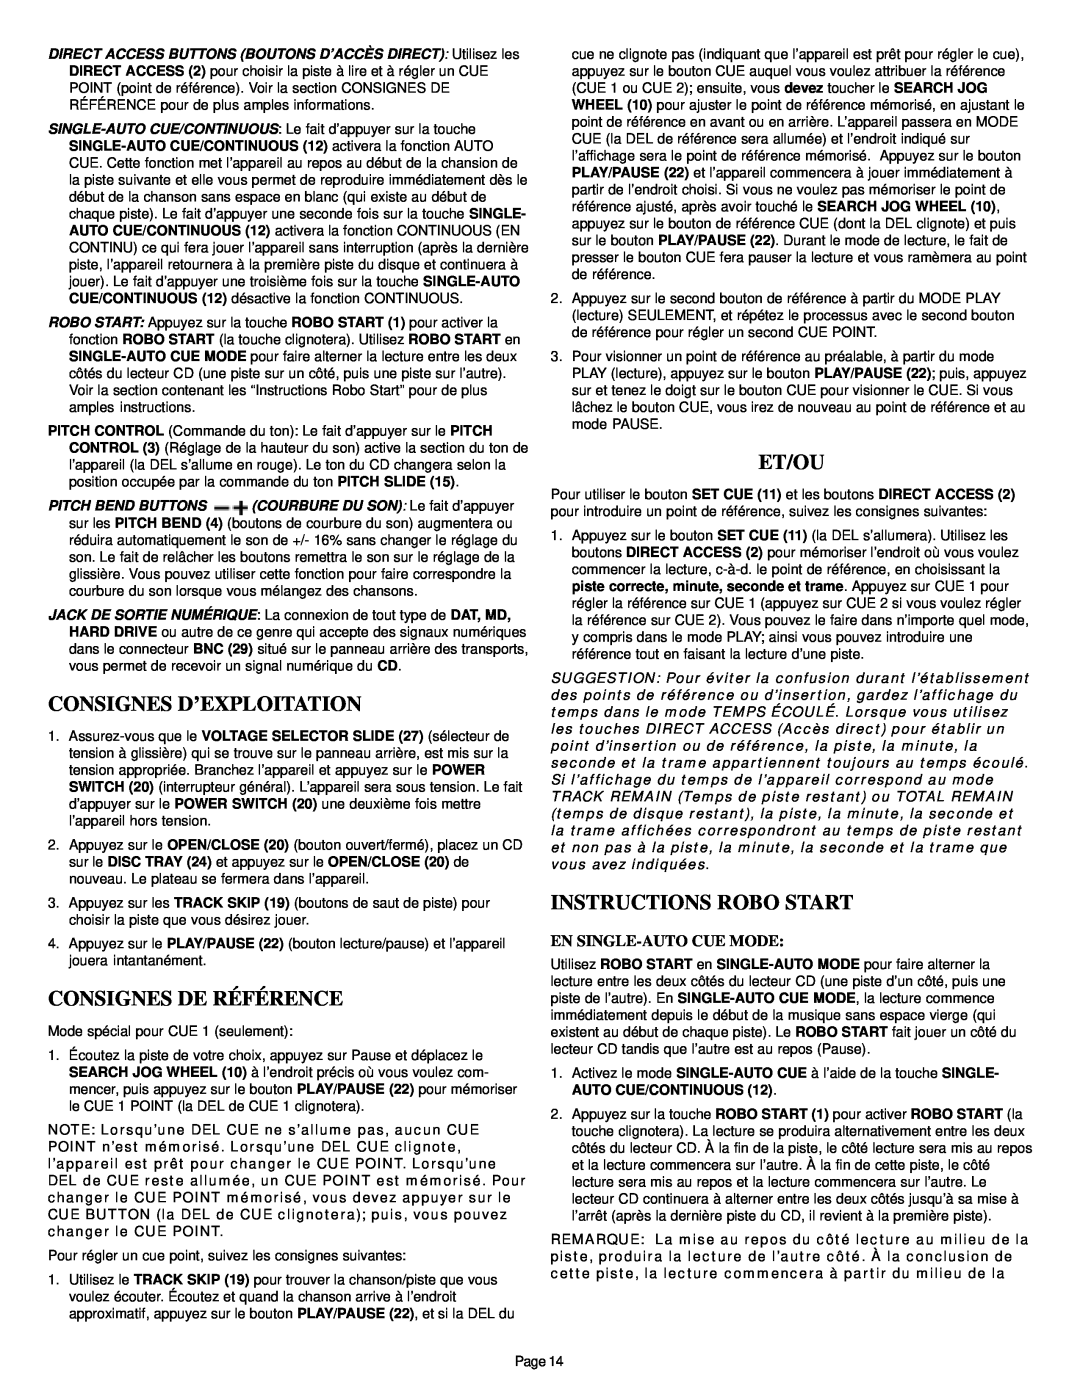 Gemini CDS-2000 Consignes D’Exploitation, Consignes De Référence, Et/Ou, Instructions Robo Start, En Single-Autocue Mode 